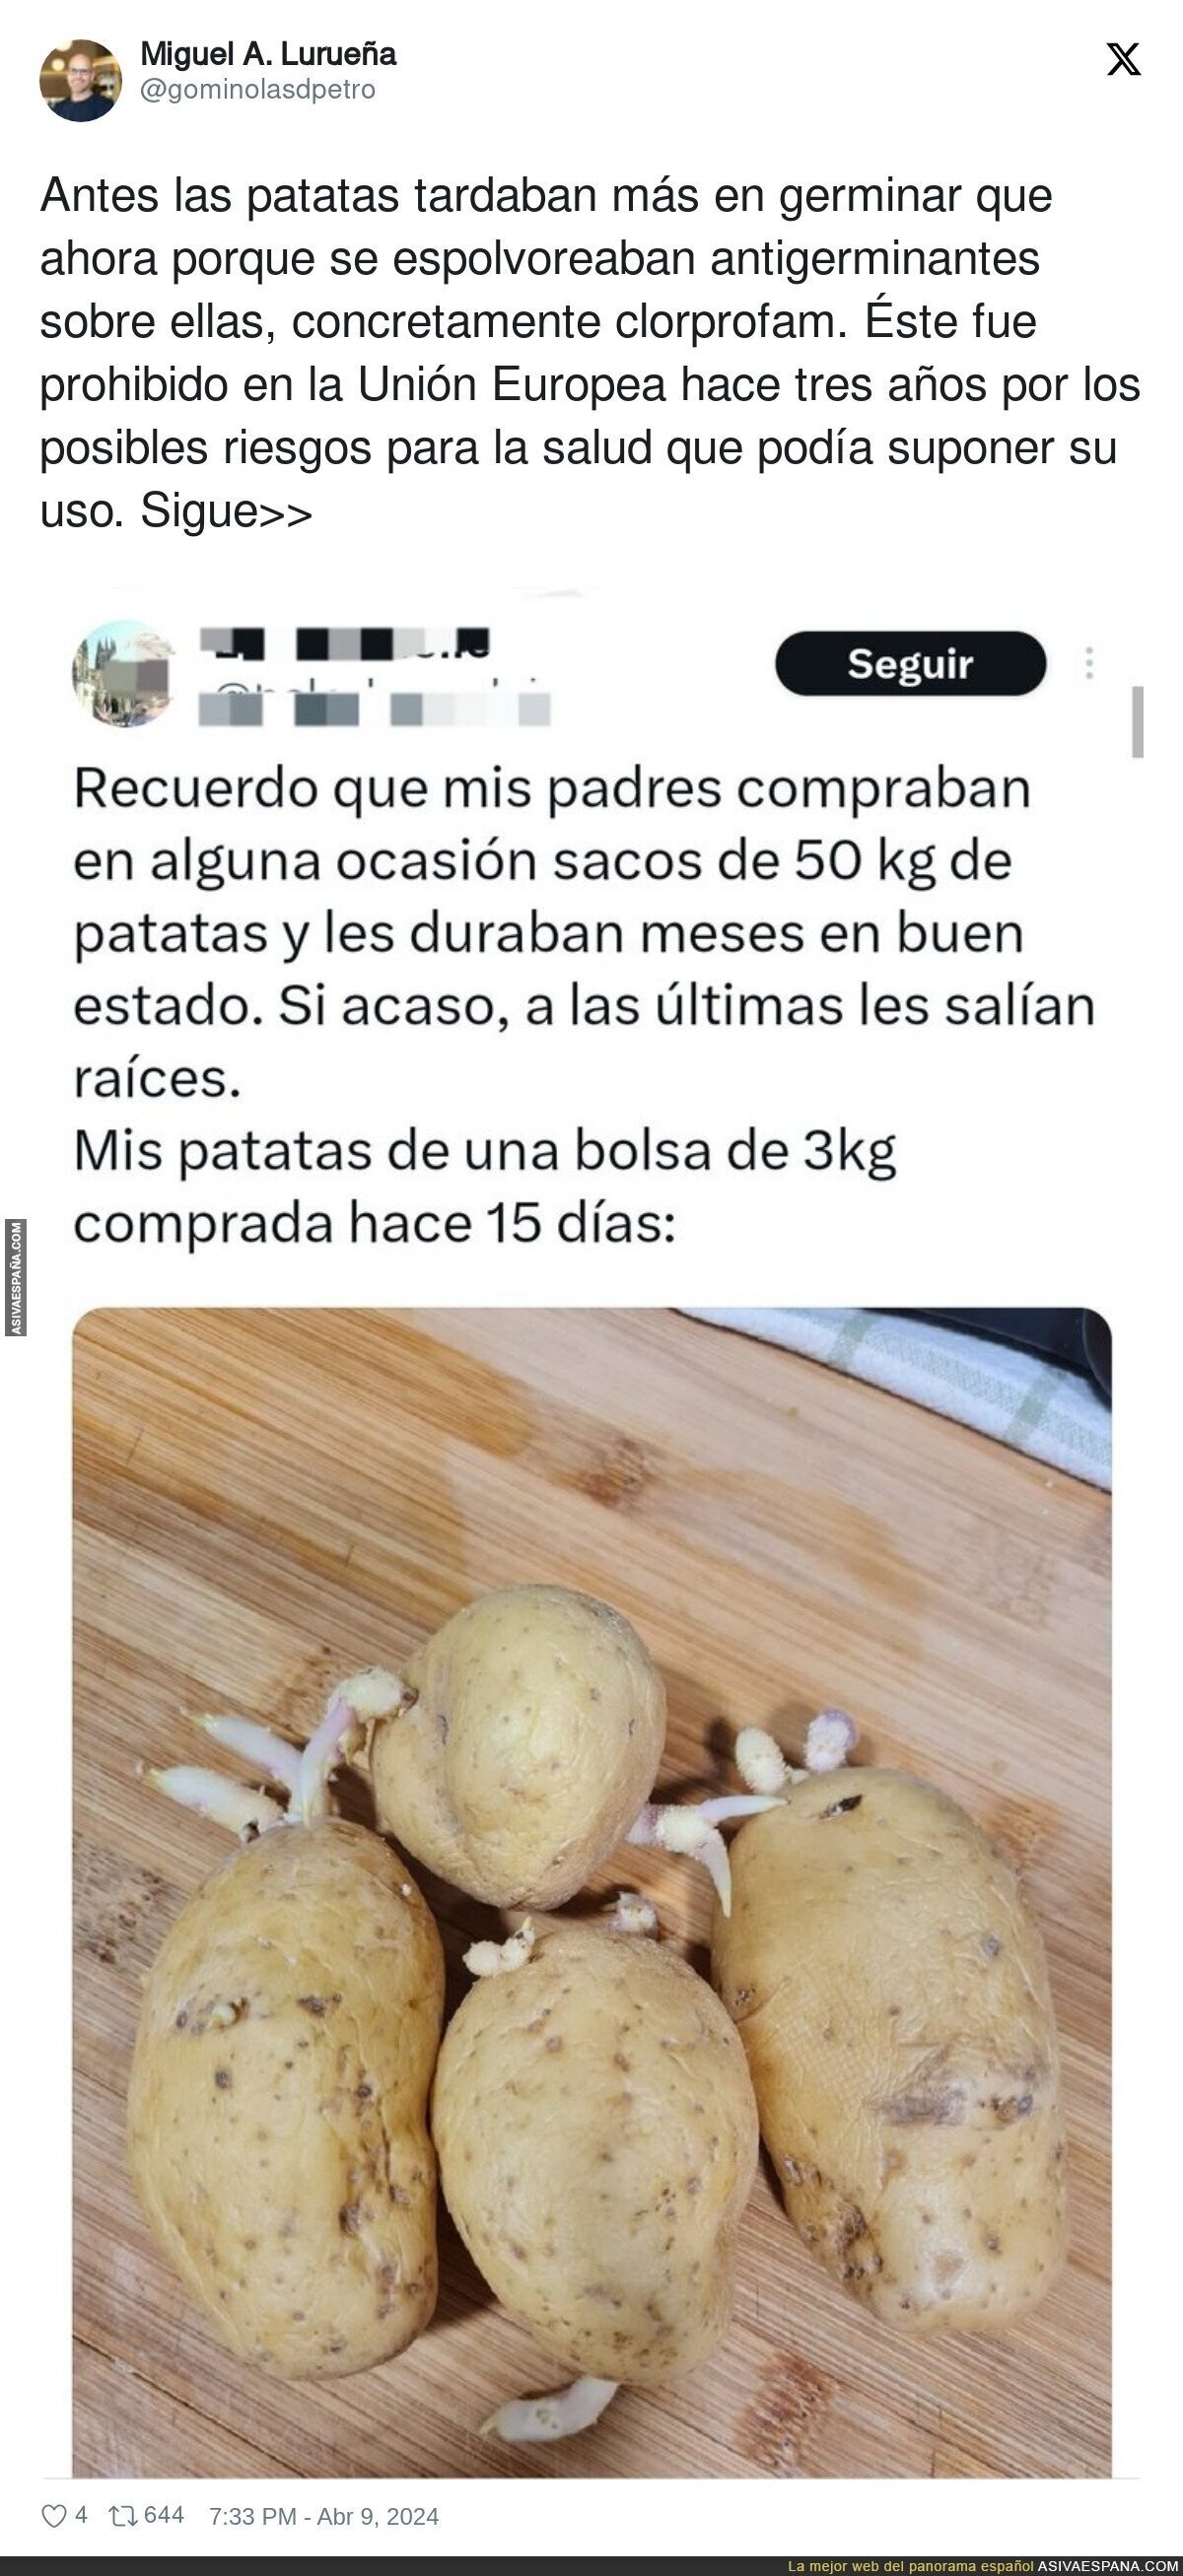 La explicación de lo que ocurre con las patatas